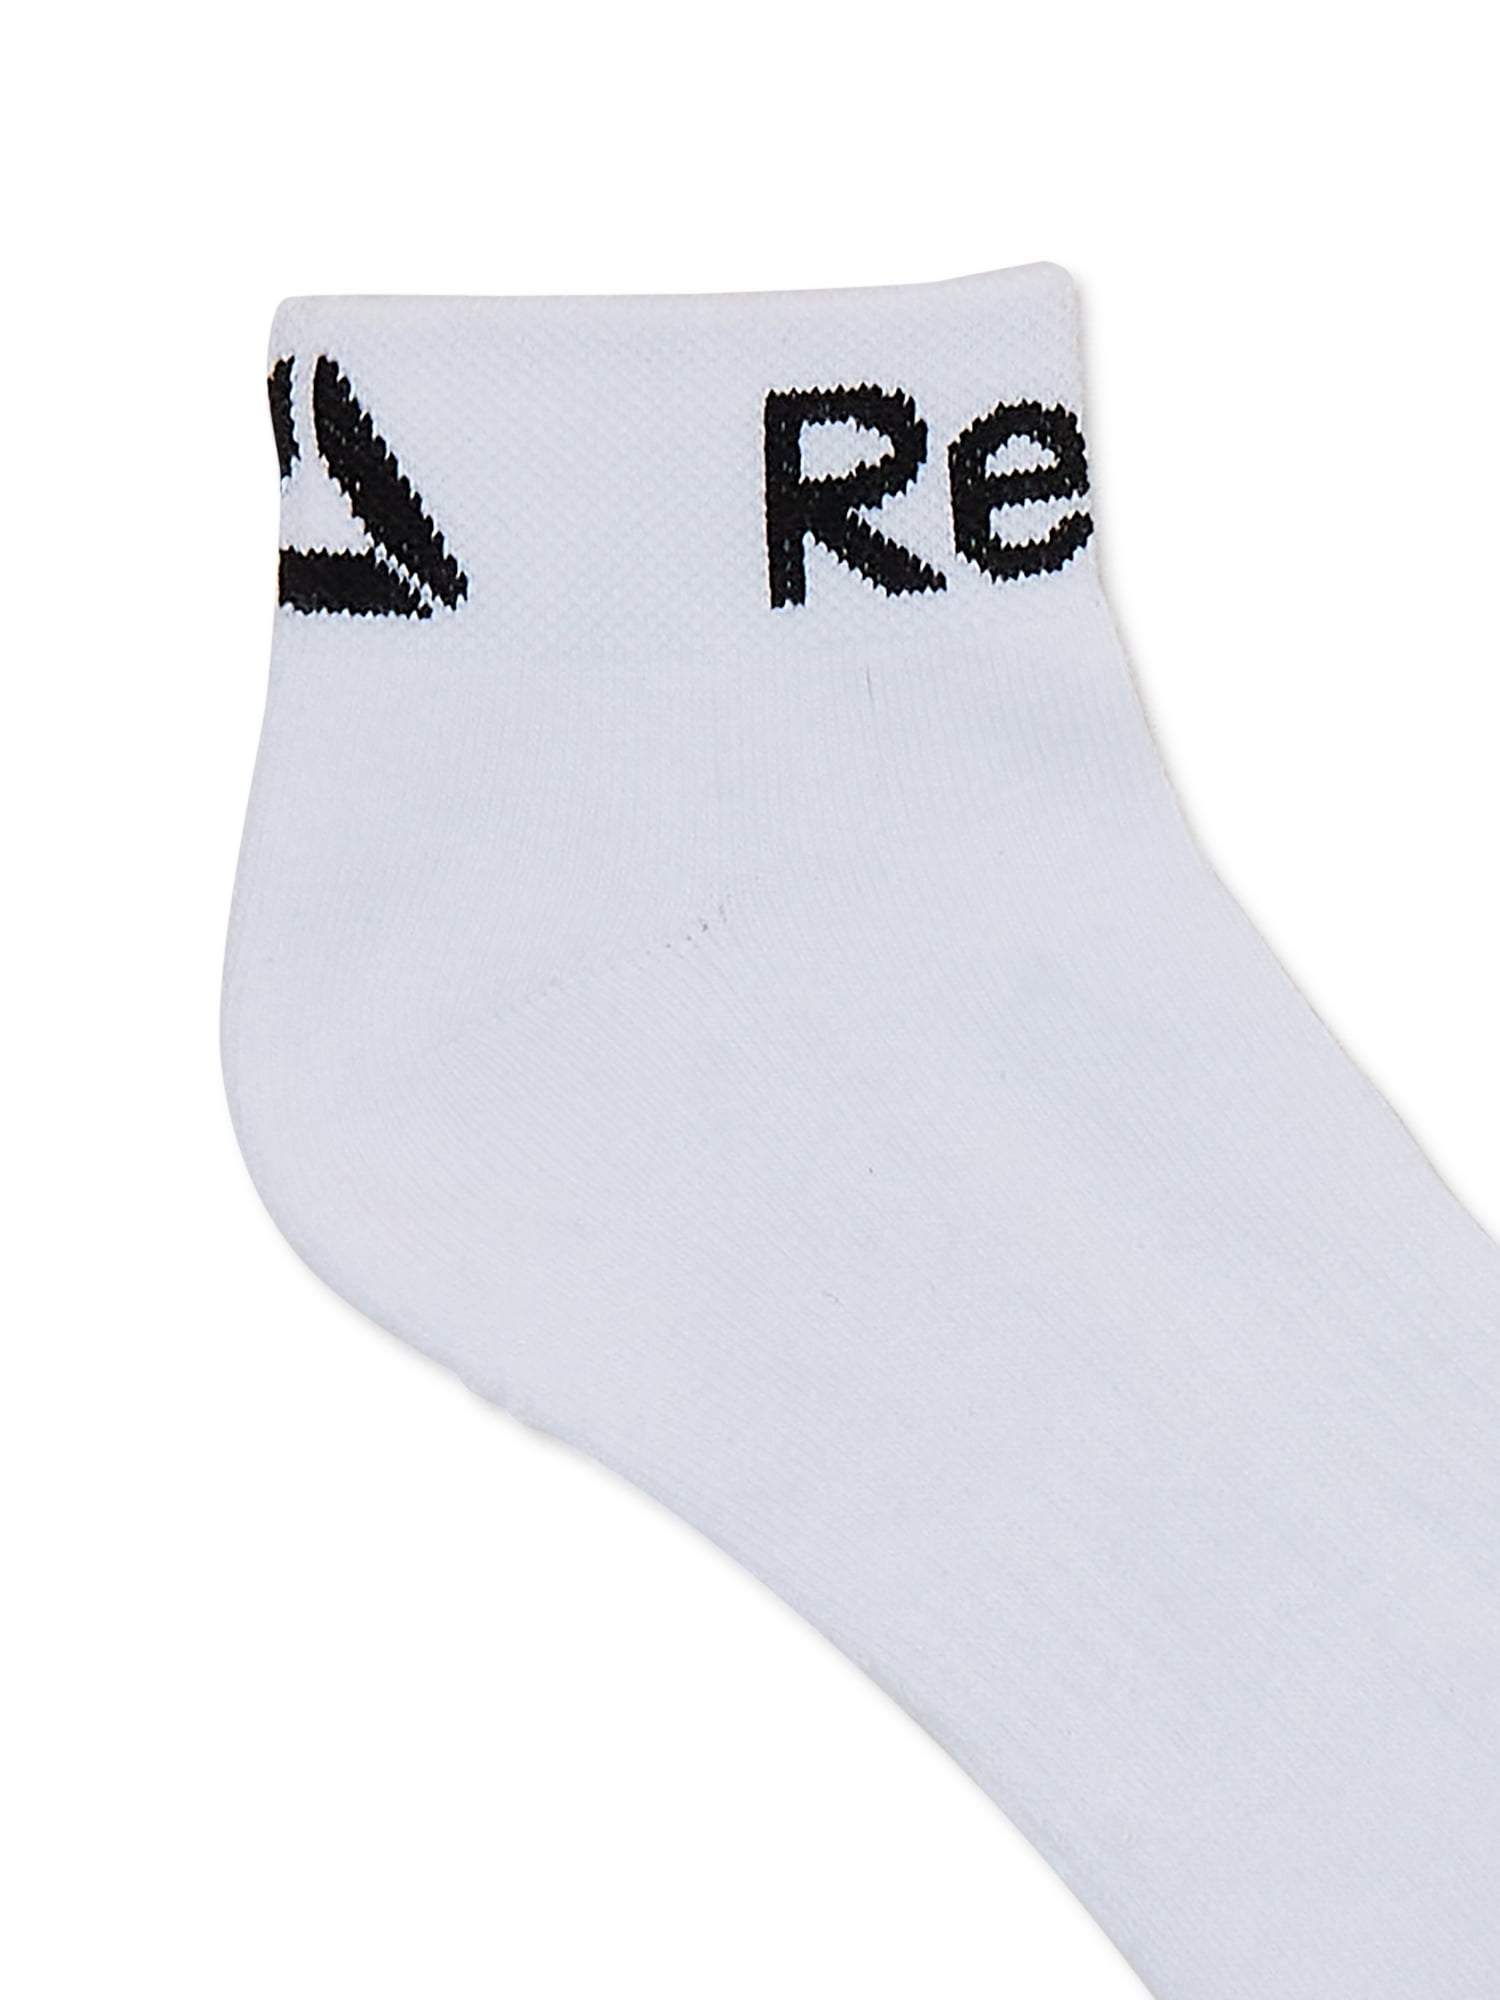 Reebok Men's Pro Series Quarter Socks, 6-Pack